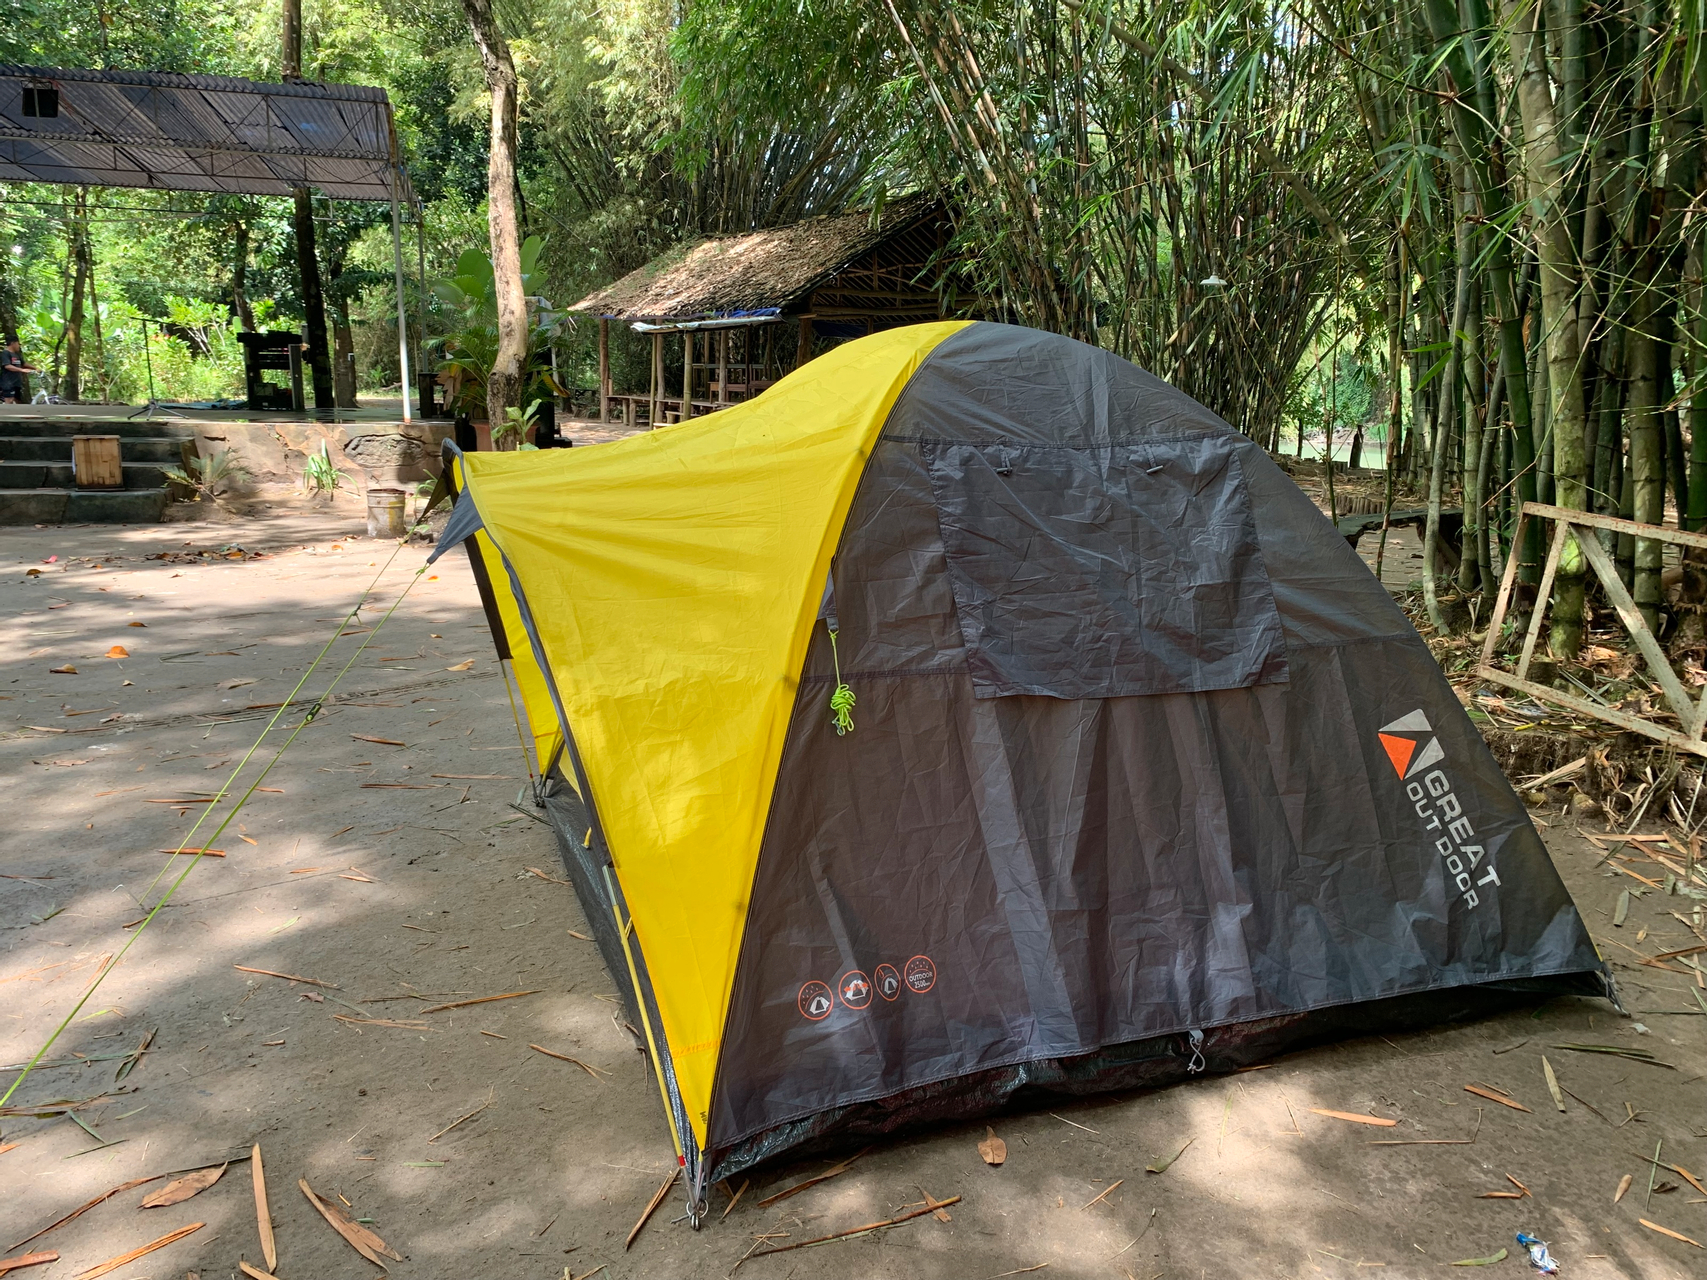 Others 3, Taman Tempuran Cikal Camping Ground, Bantul